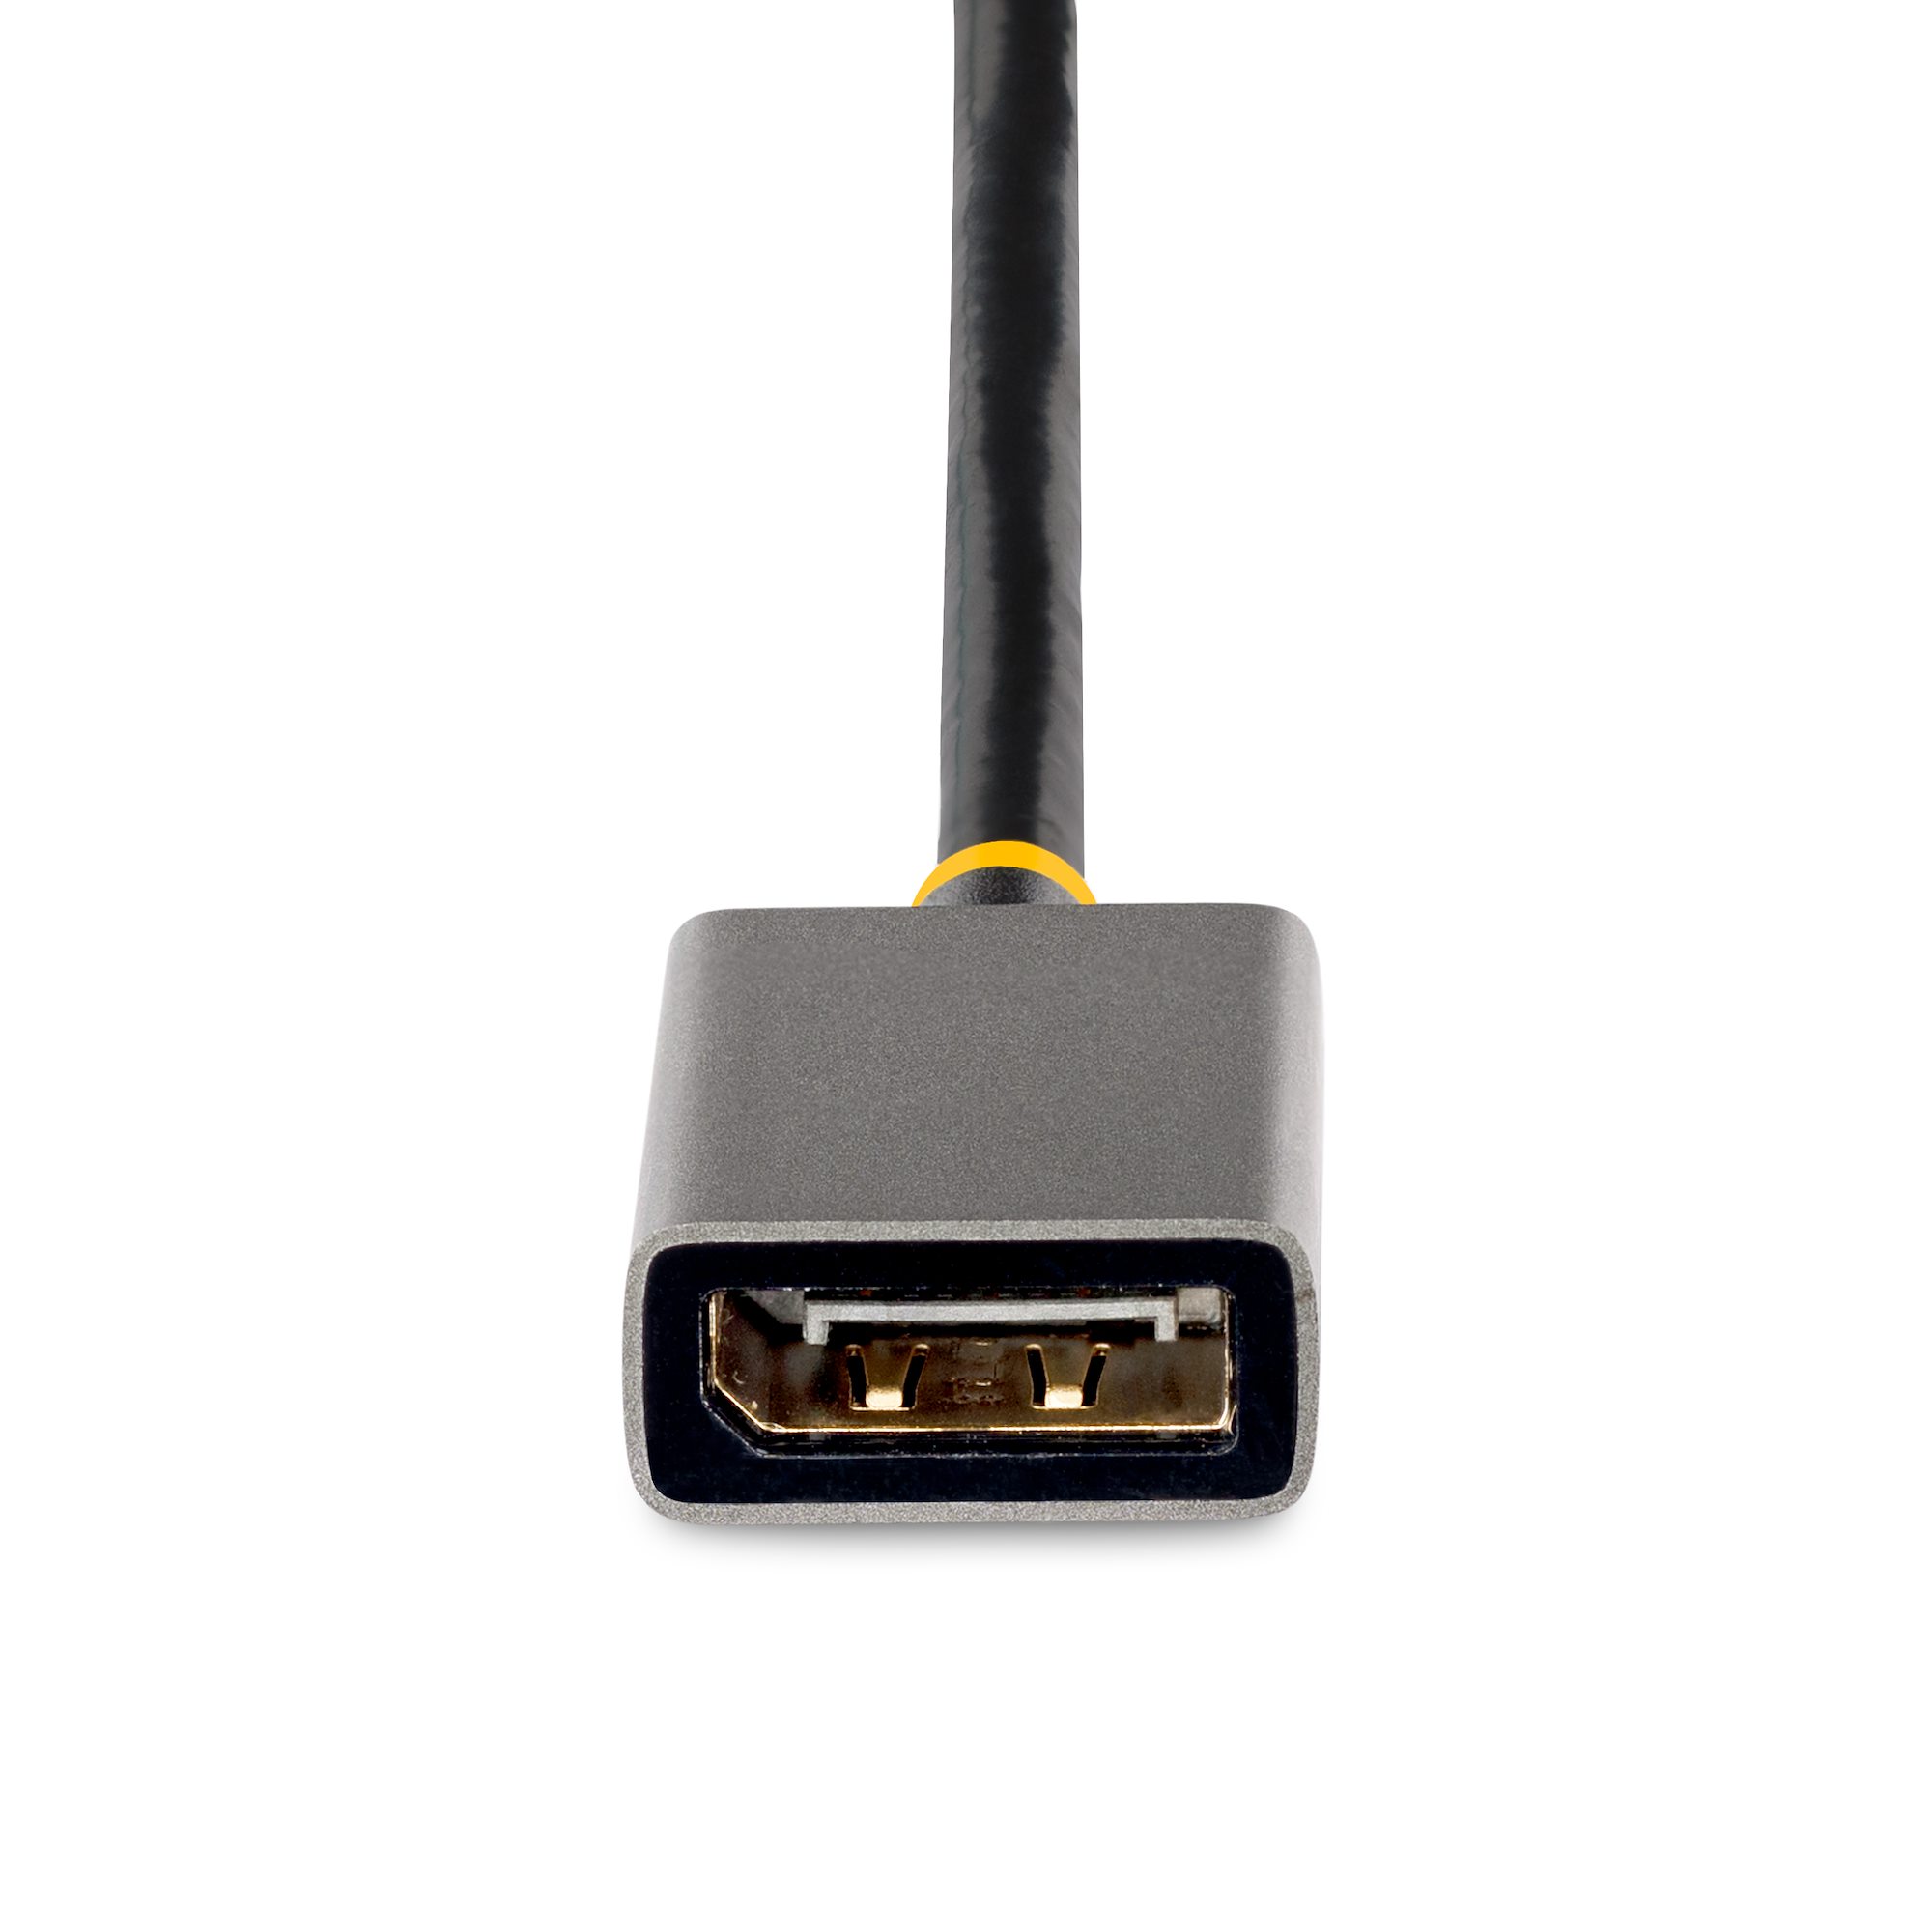 Aktiv DisplayPort till HDMI-adapter, 4K DP 1.2 till HDMI 1.4-omvandlare,  hane displayport in till HDMI ut för bärbar dator, PC, stationär till  bildskärm, TV, projektor, AMD Eyefinity för spel upp till 6